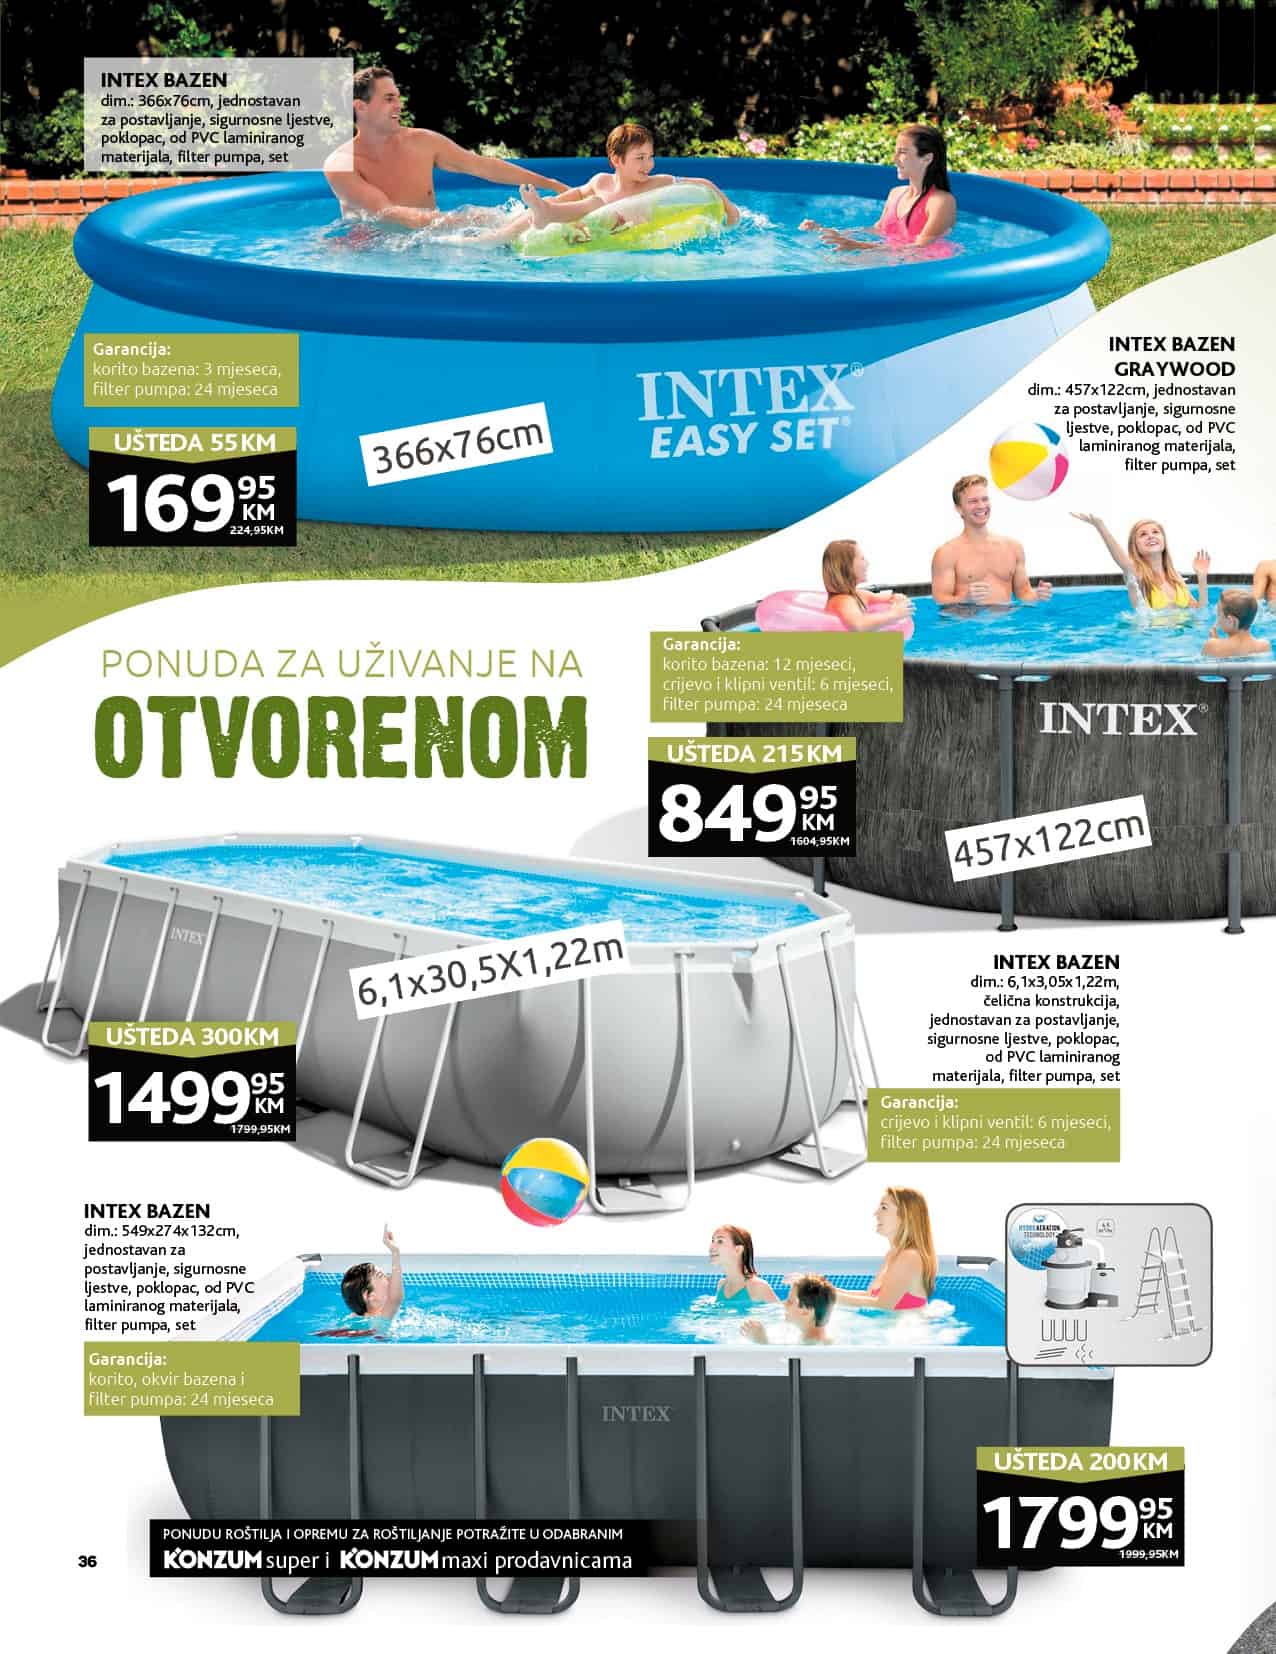 Konzum-ova ponuda za uživanje na otvorenom!
Kupovinom Intex bazena SAD uštedjet ćete i do 300 KM! 